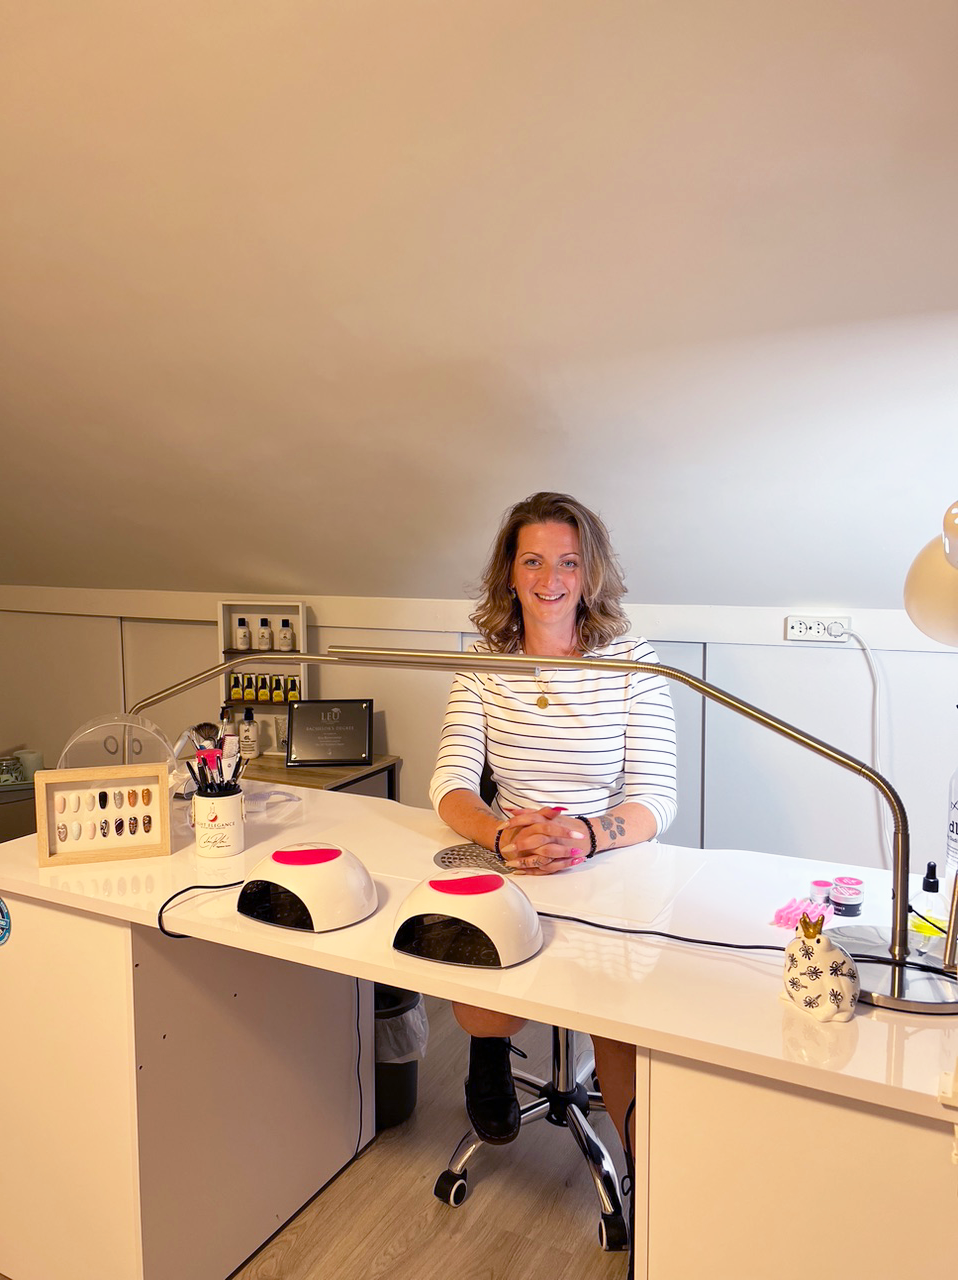 #LEFamily Member Highlight | Kim Brouwenstijn - NEW in the Netherlands